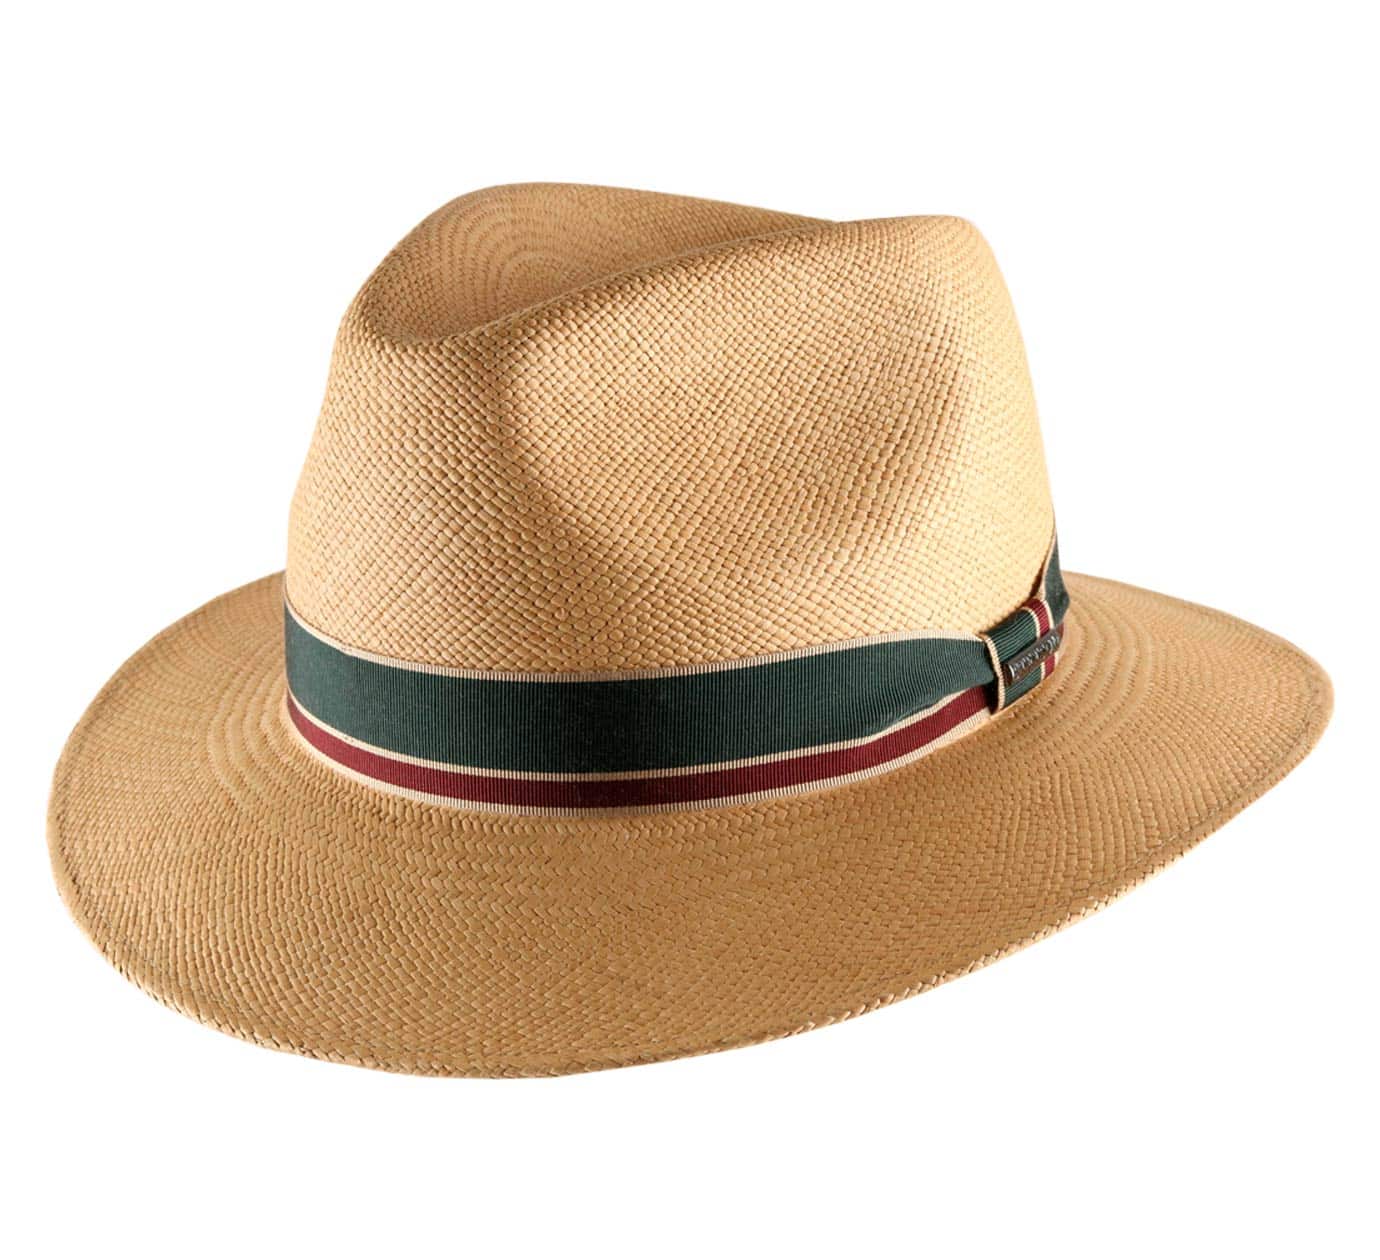 Comment reconnaître un authentique chapeau Panama